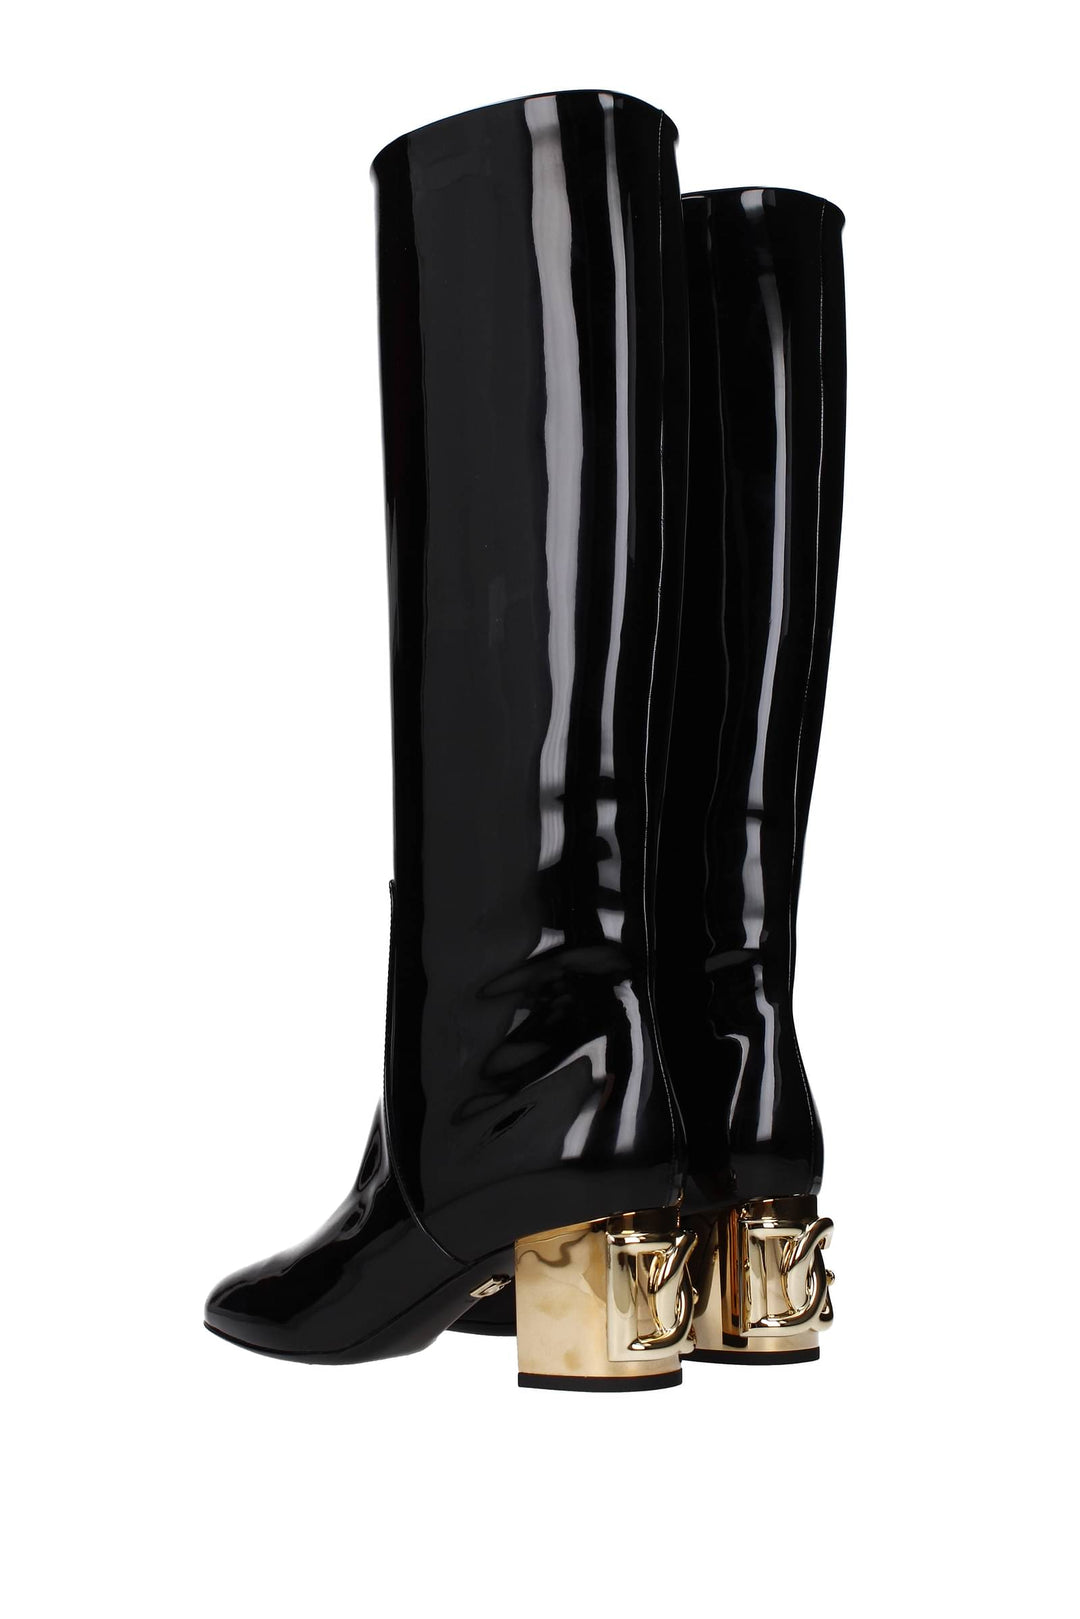 Stivali Vernice Nero - Dolce&Gabbana - Donna